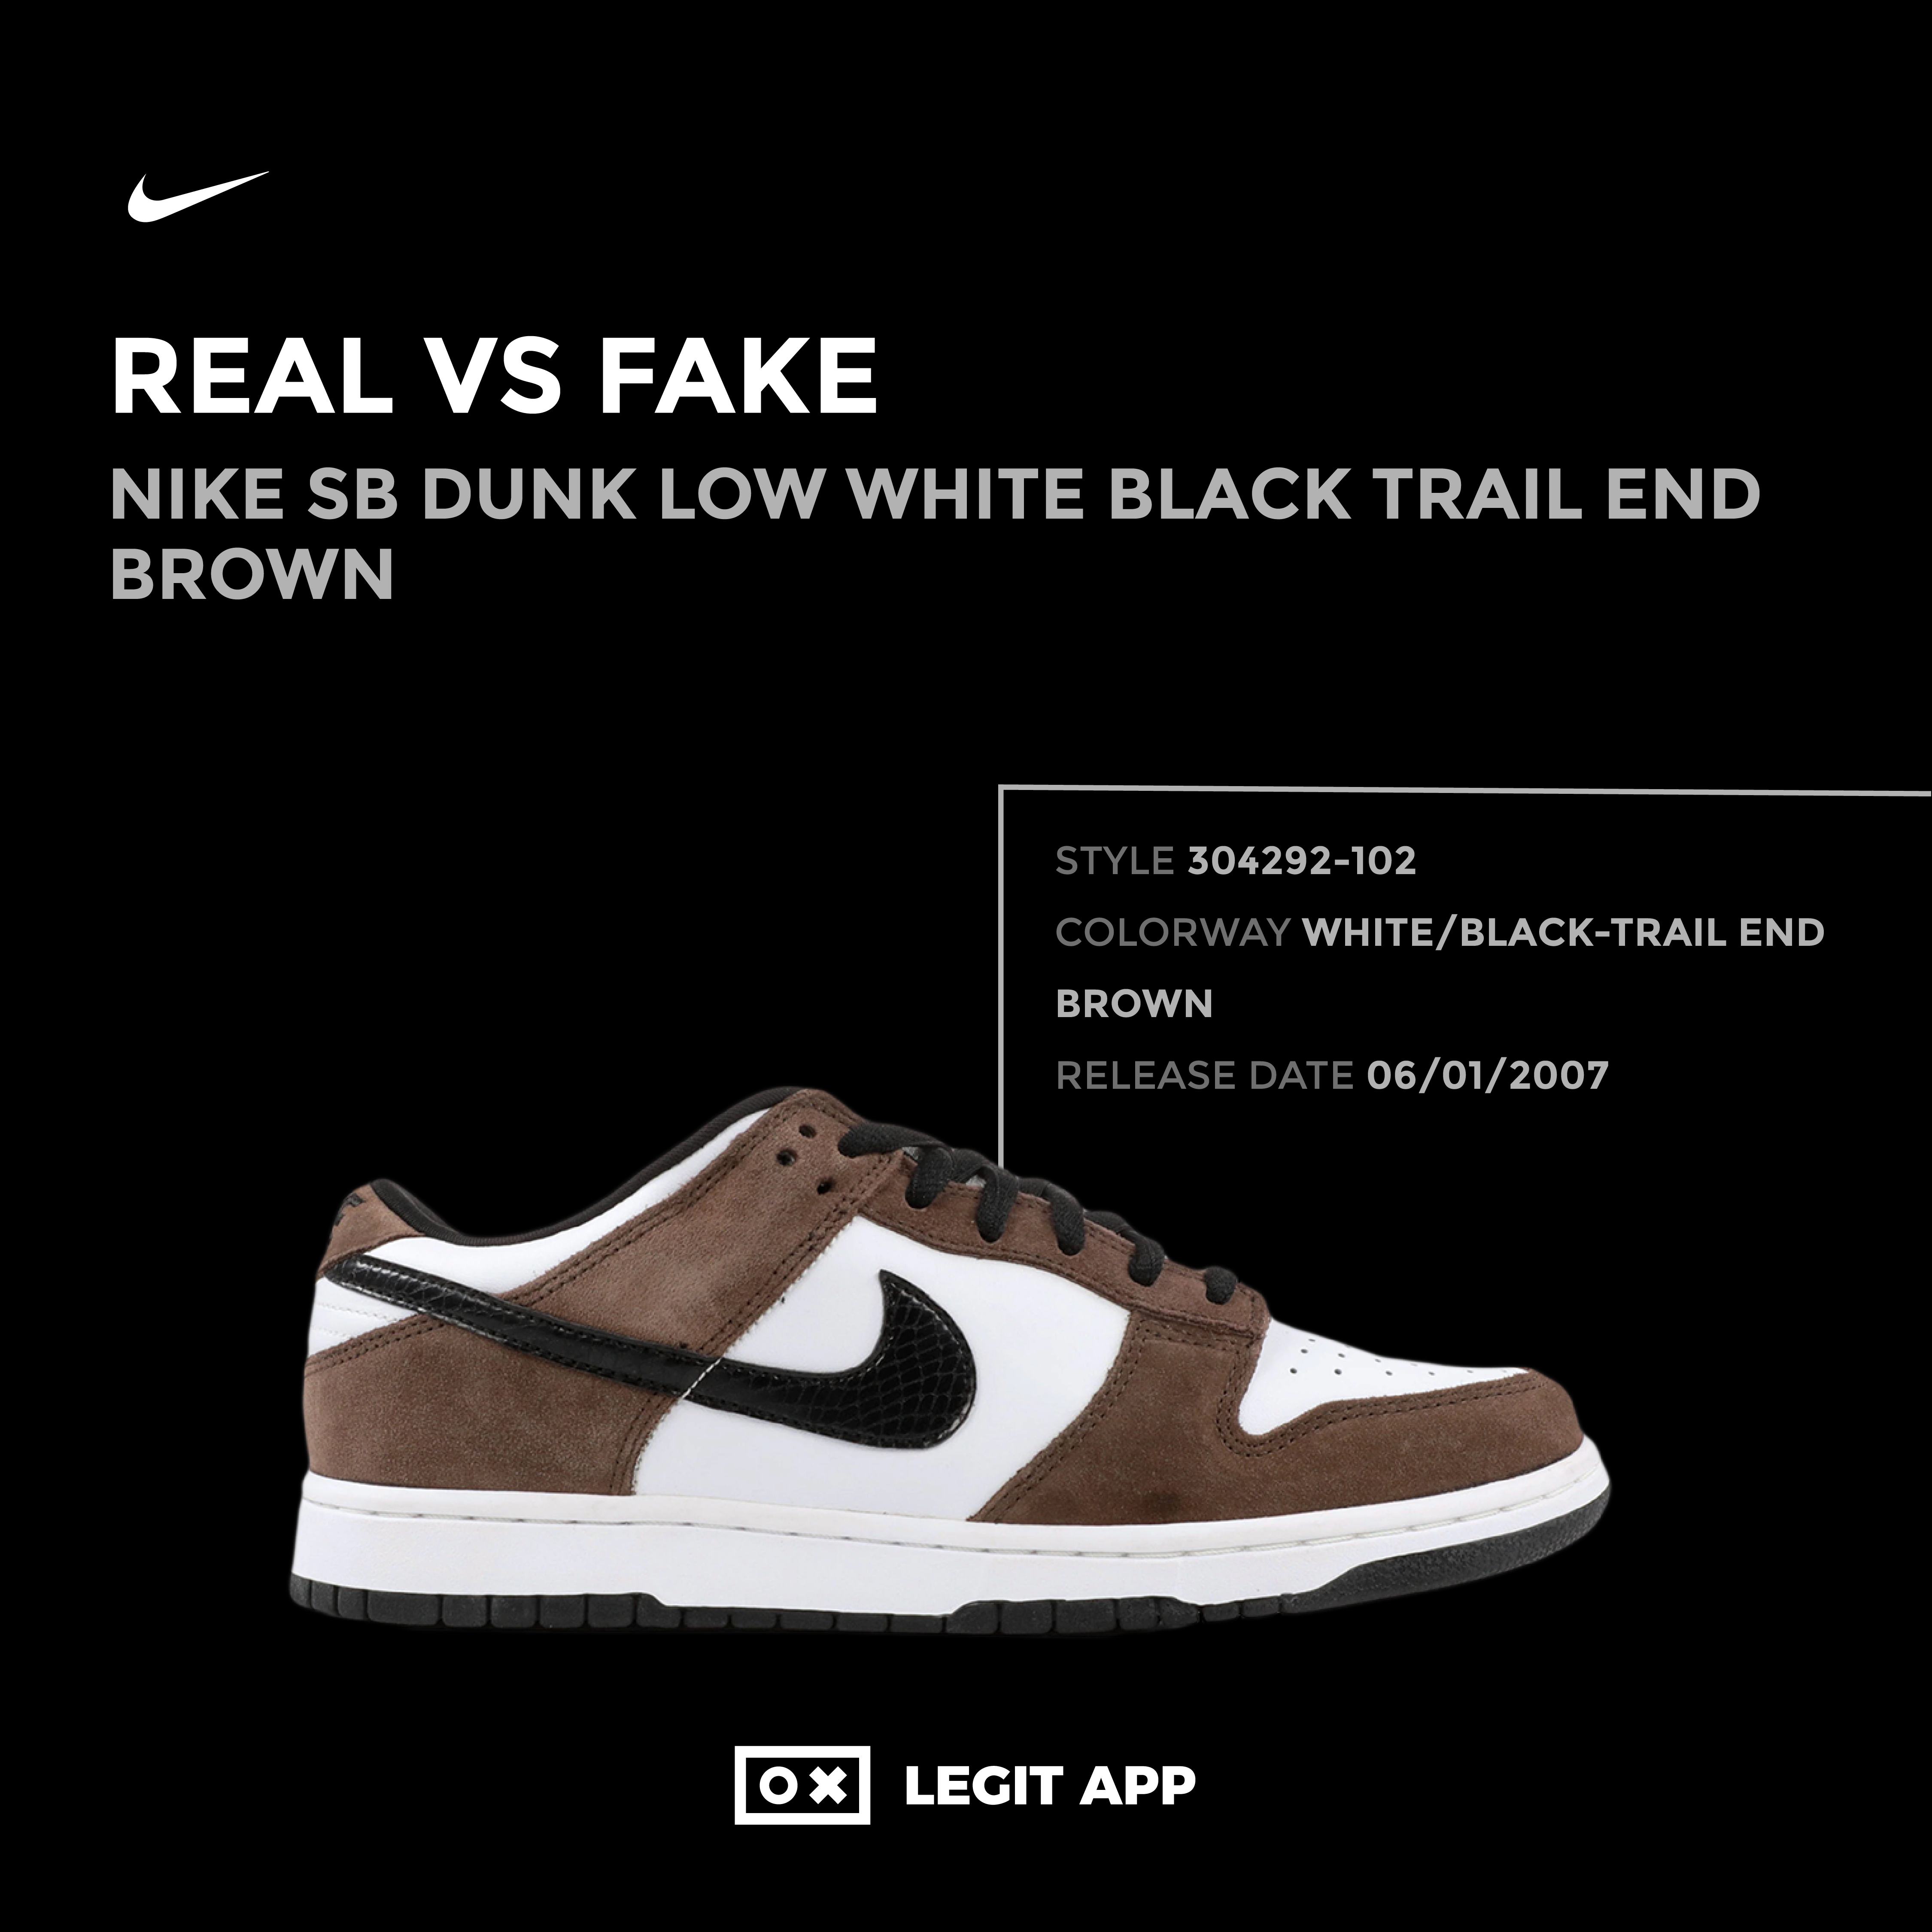 REAL VS REPLICA - Nike SB Dunk Low White Black Trail End Brown